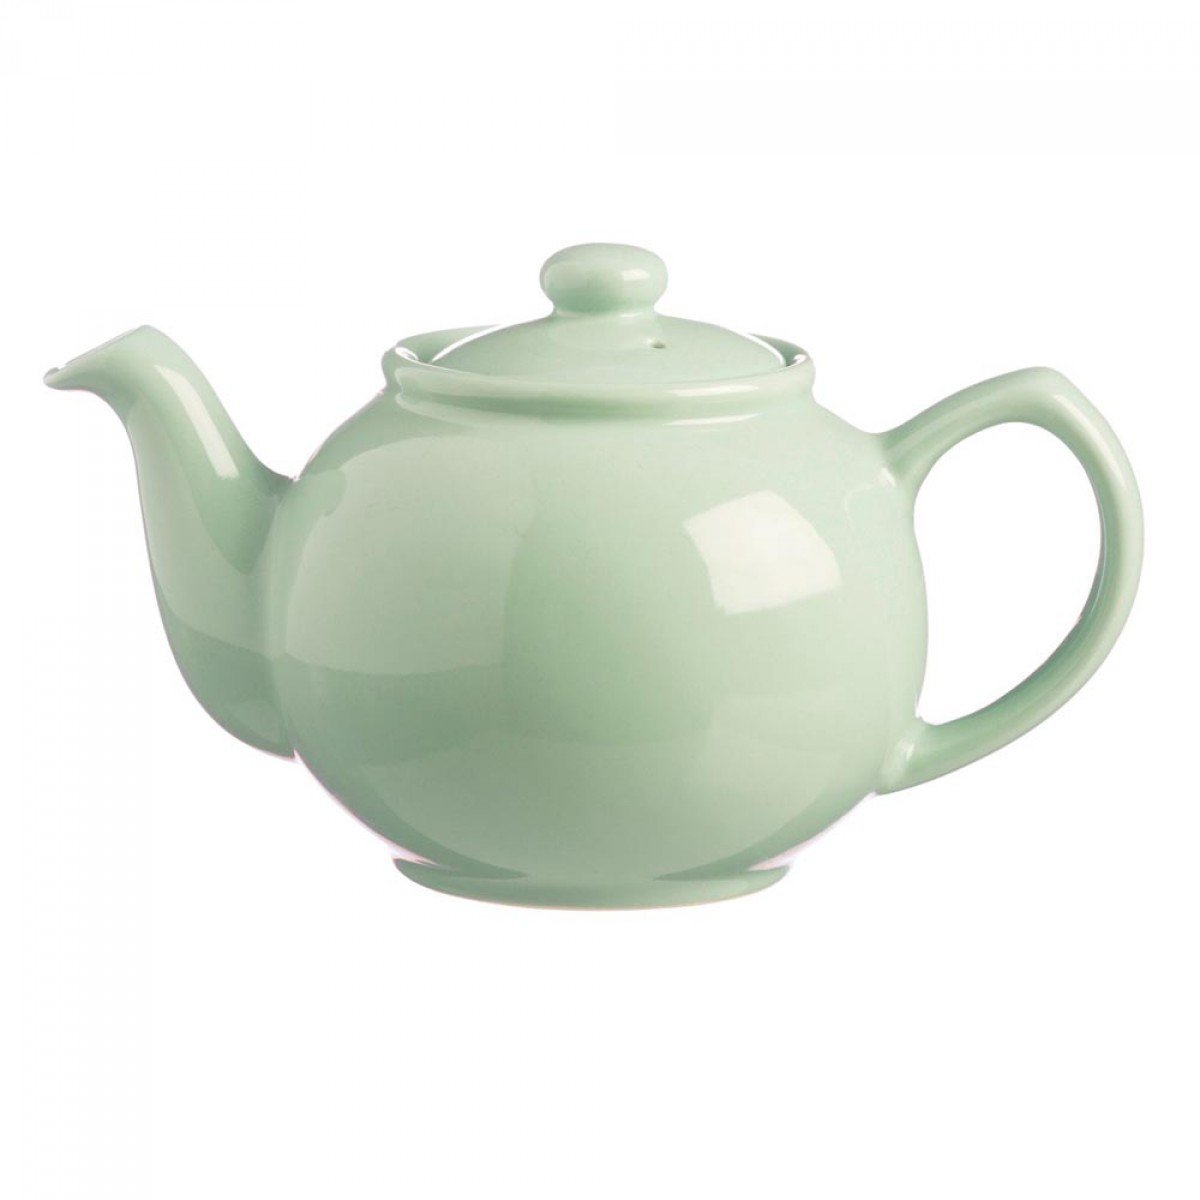 Price & Kensington dzbanek na herbatę z pokrywą  kolor: miętowy  typowo w języku angielskim dzbanek na herbatę  2 filiżanki 0056,767 (0056.767)